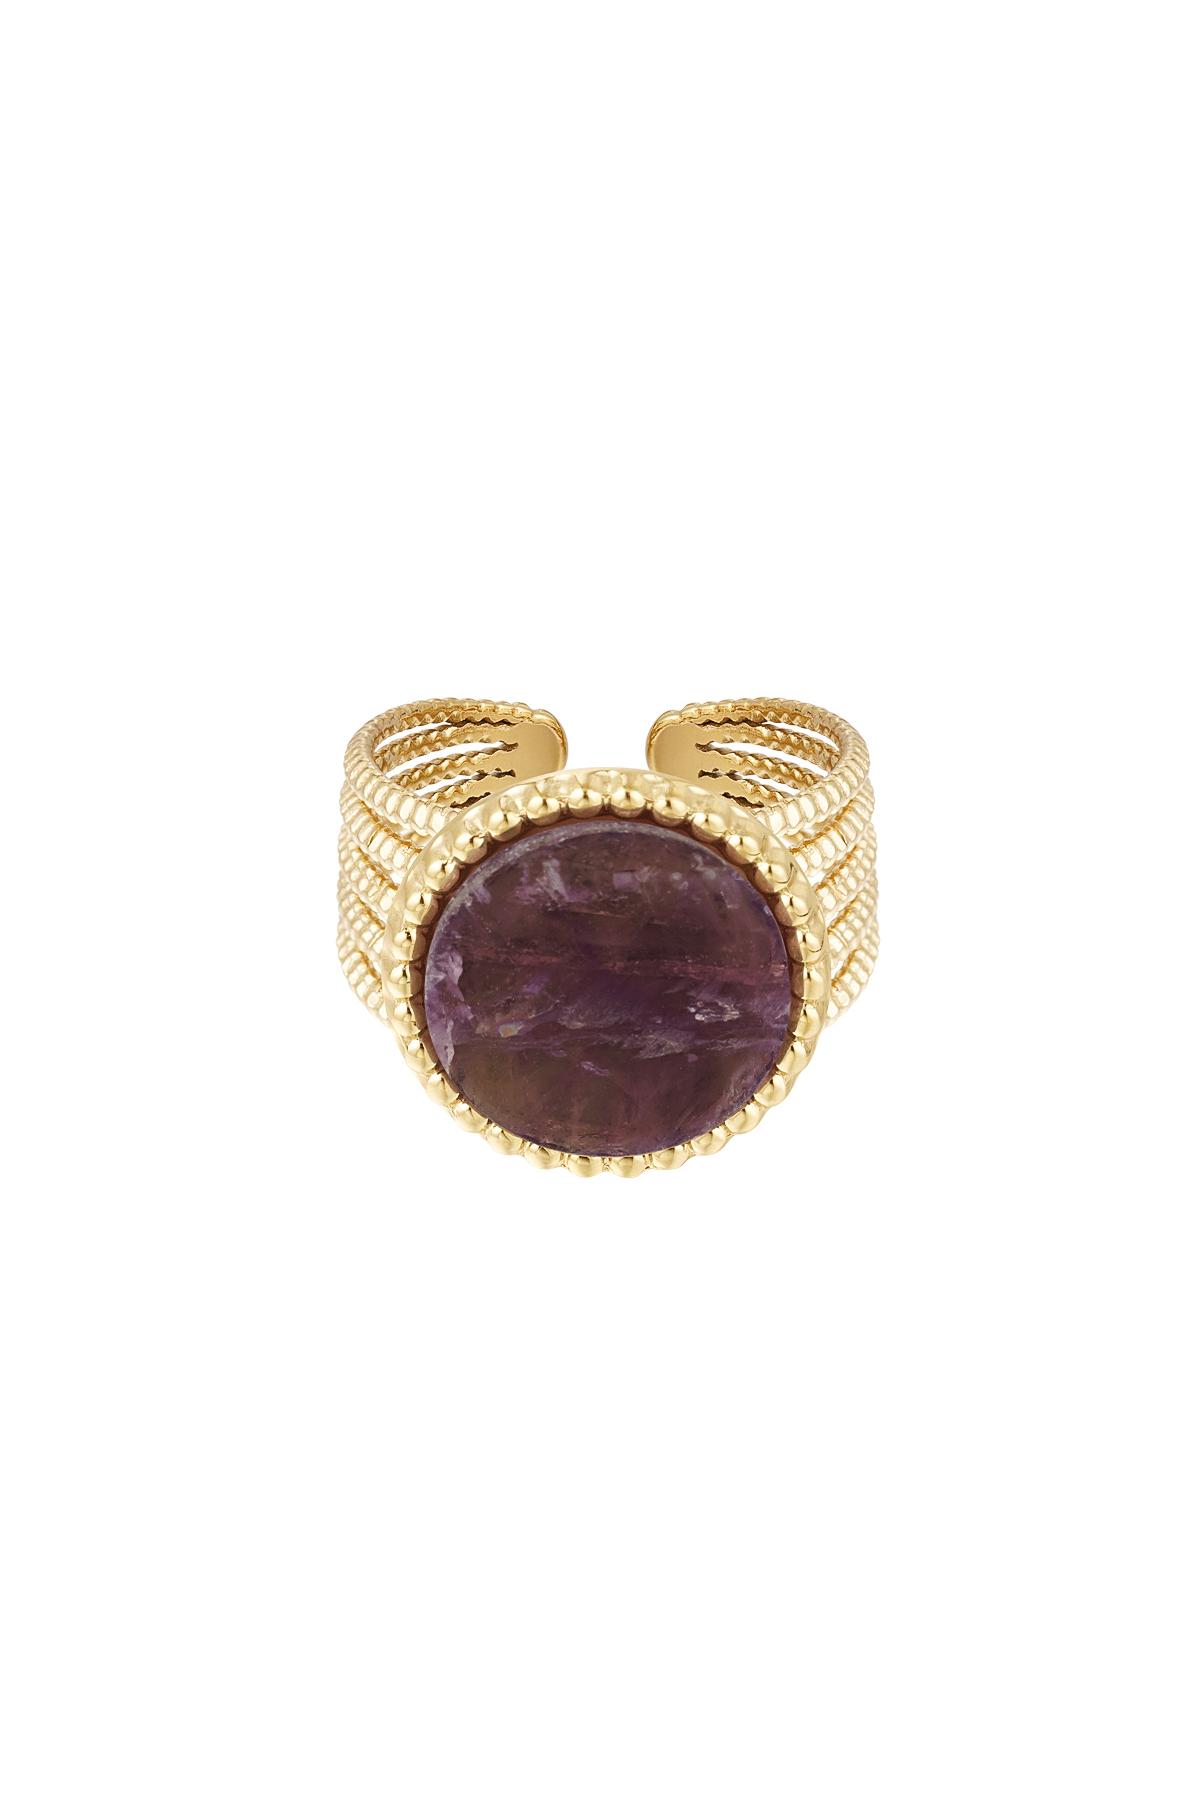 Taşlı Bildiri Yüzüğü - Mor - Doğal taş koleksiyonu Purple Stainless Steel One size 